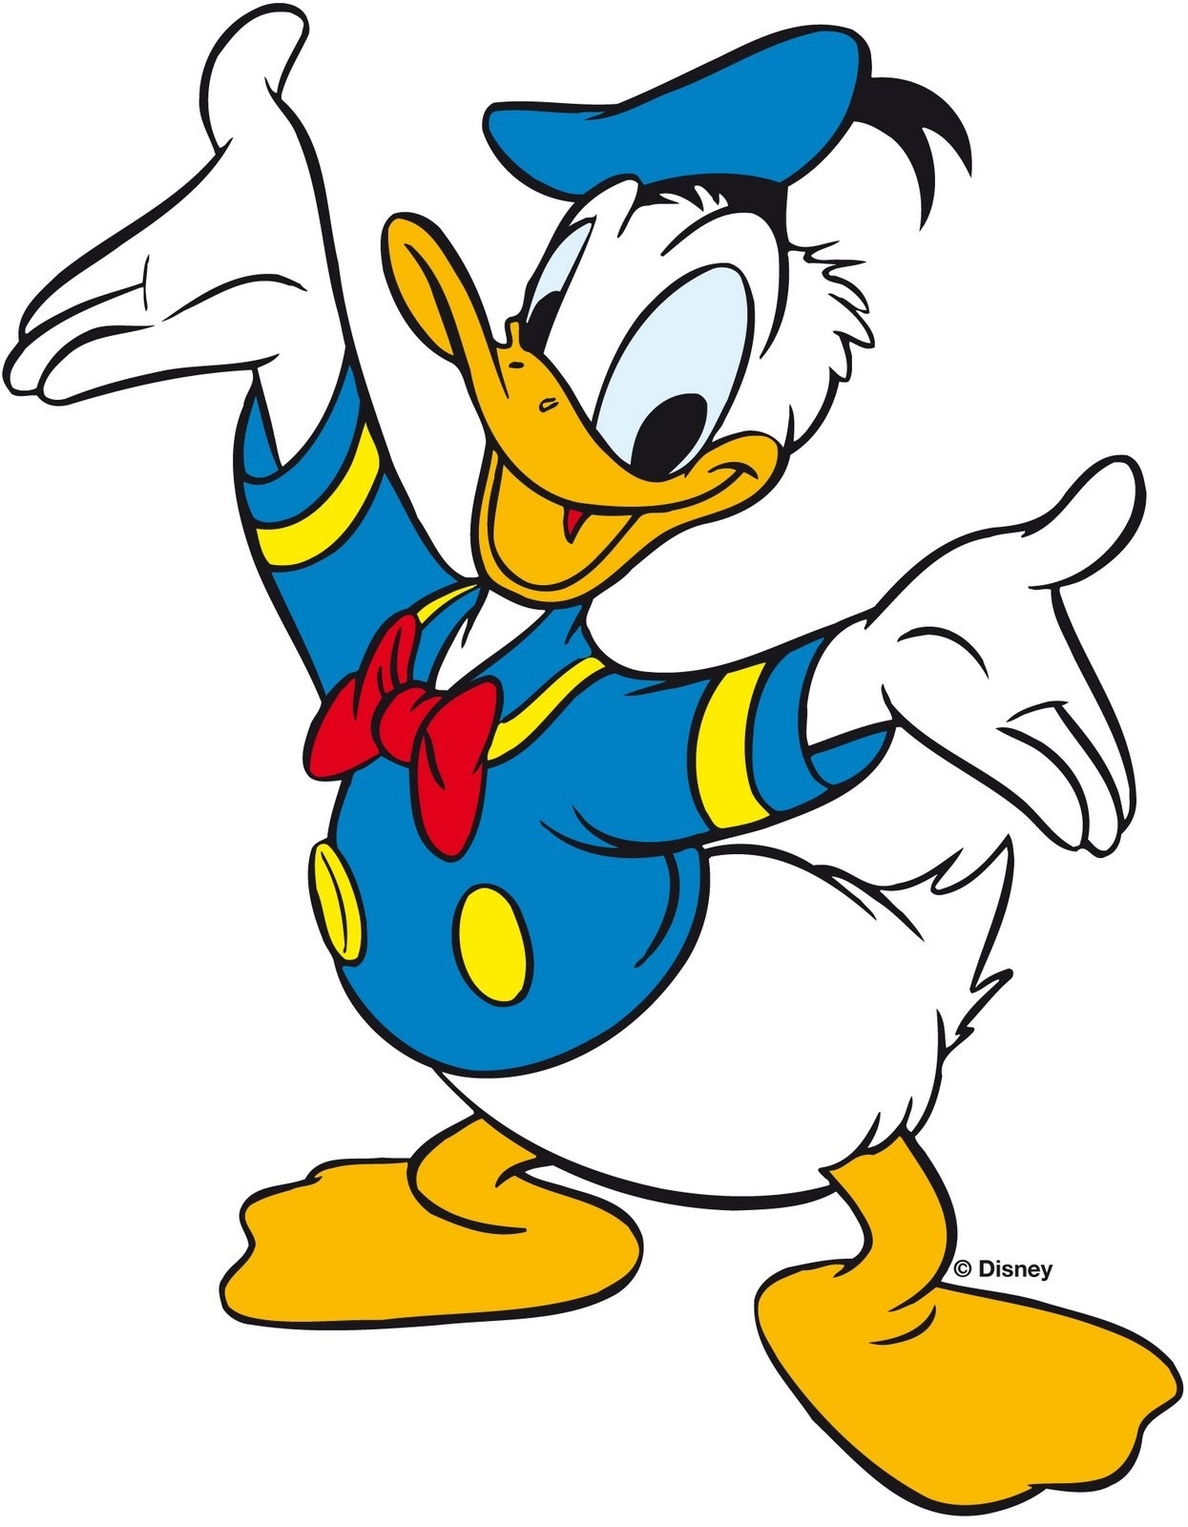 Donald: el pato más trabajado de Disney ¡Pero perezoso!